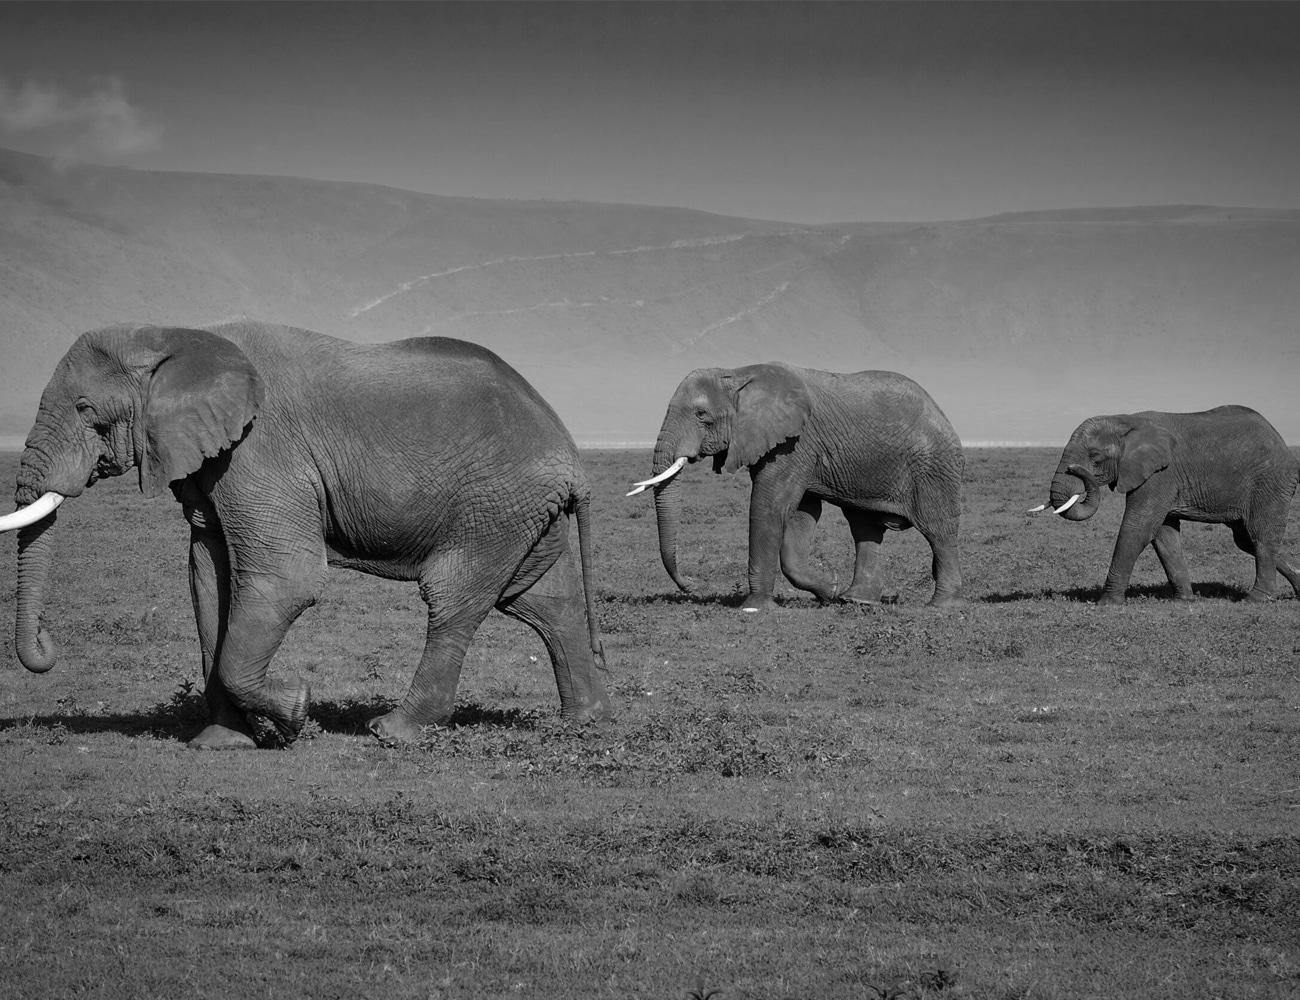 Elephants at Ngorongoro Conservation Area